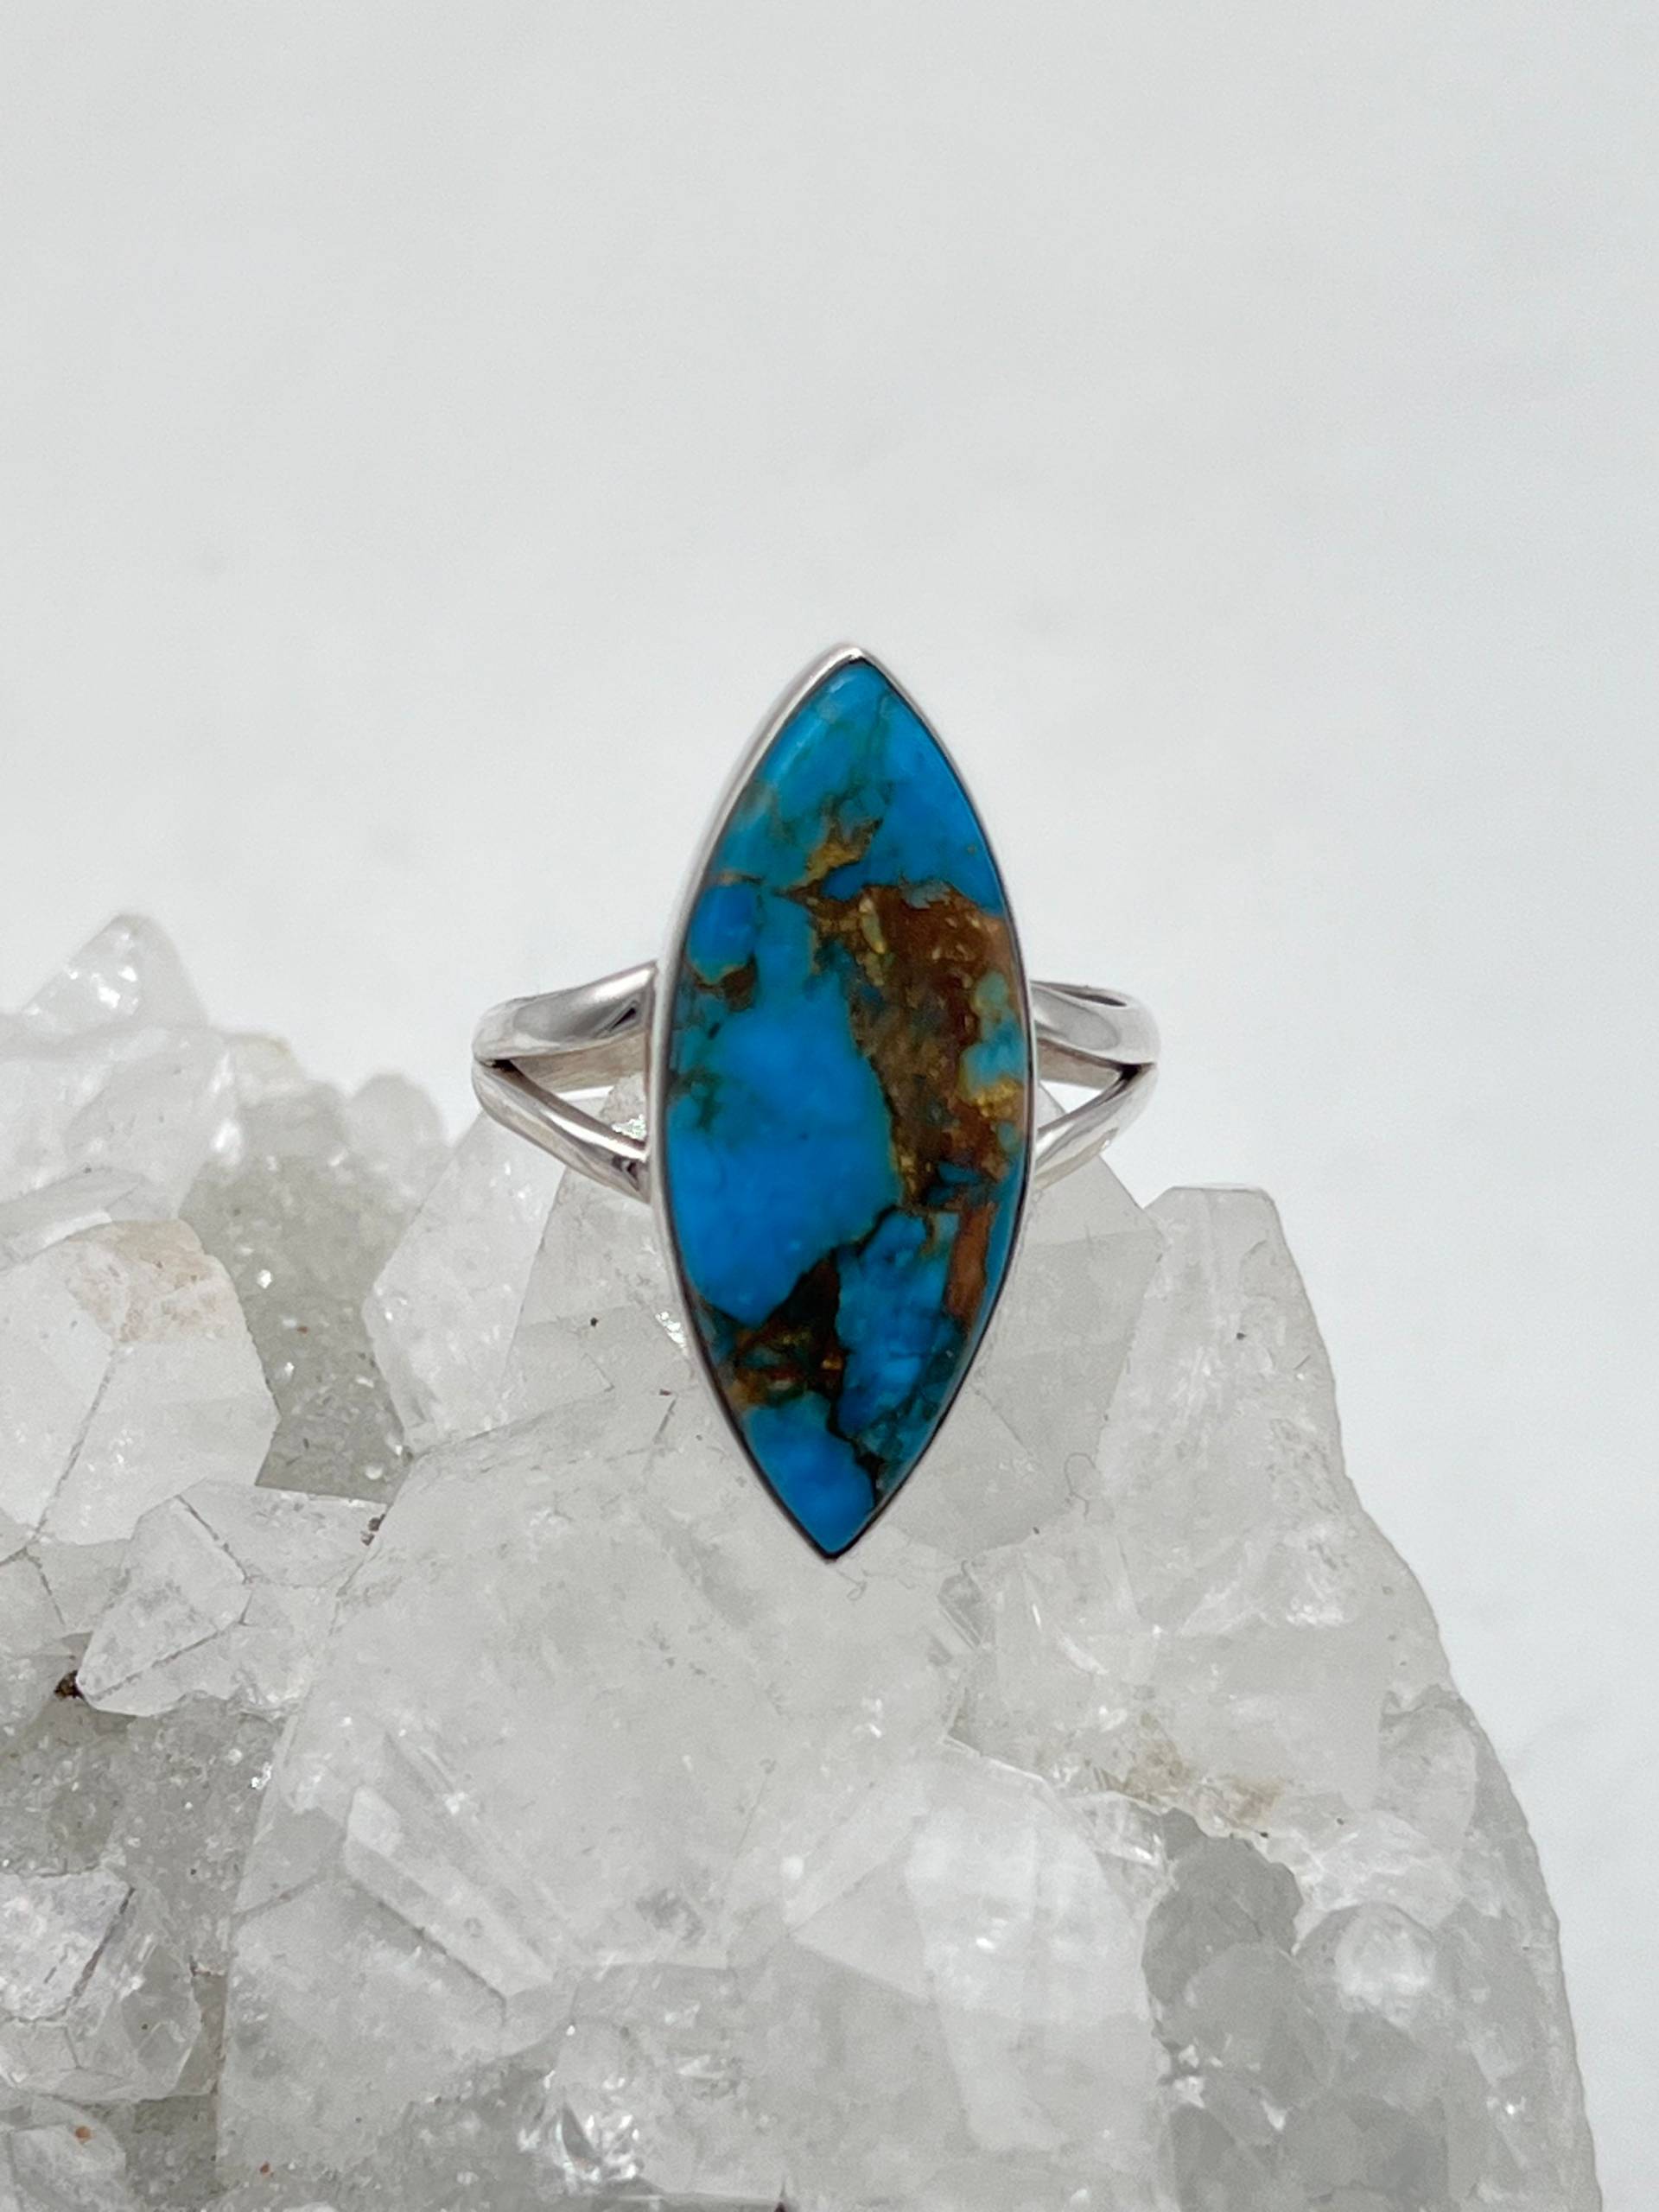 Blauer Kupfer Türkis Ring, Größe 33 cm von KarinsForgottenTreas